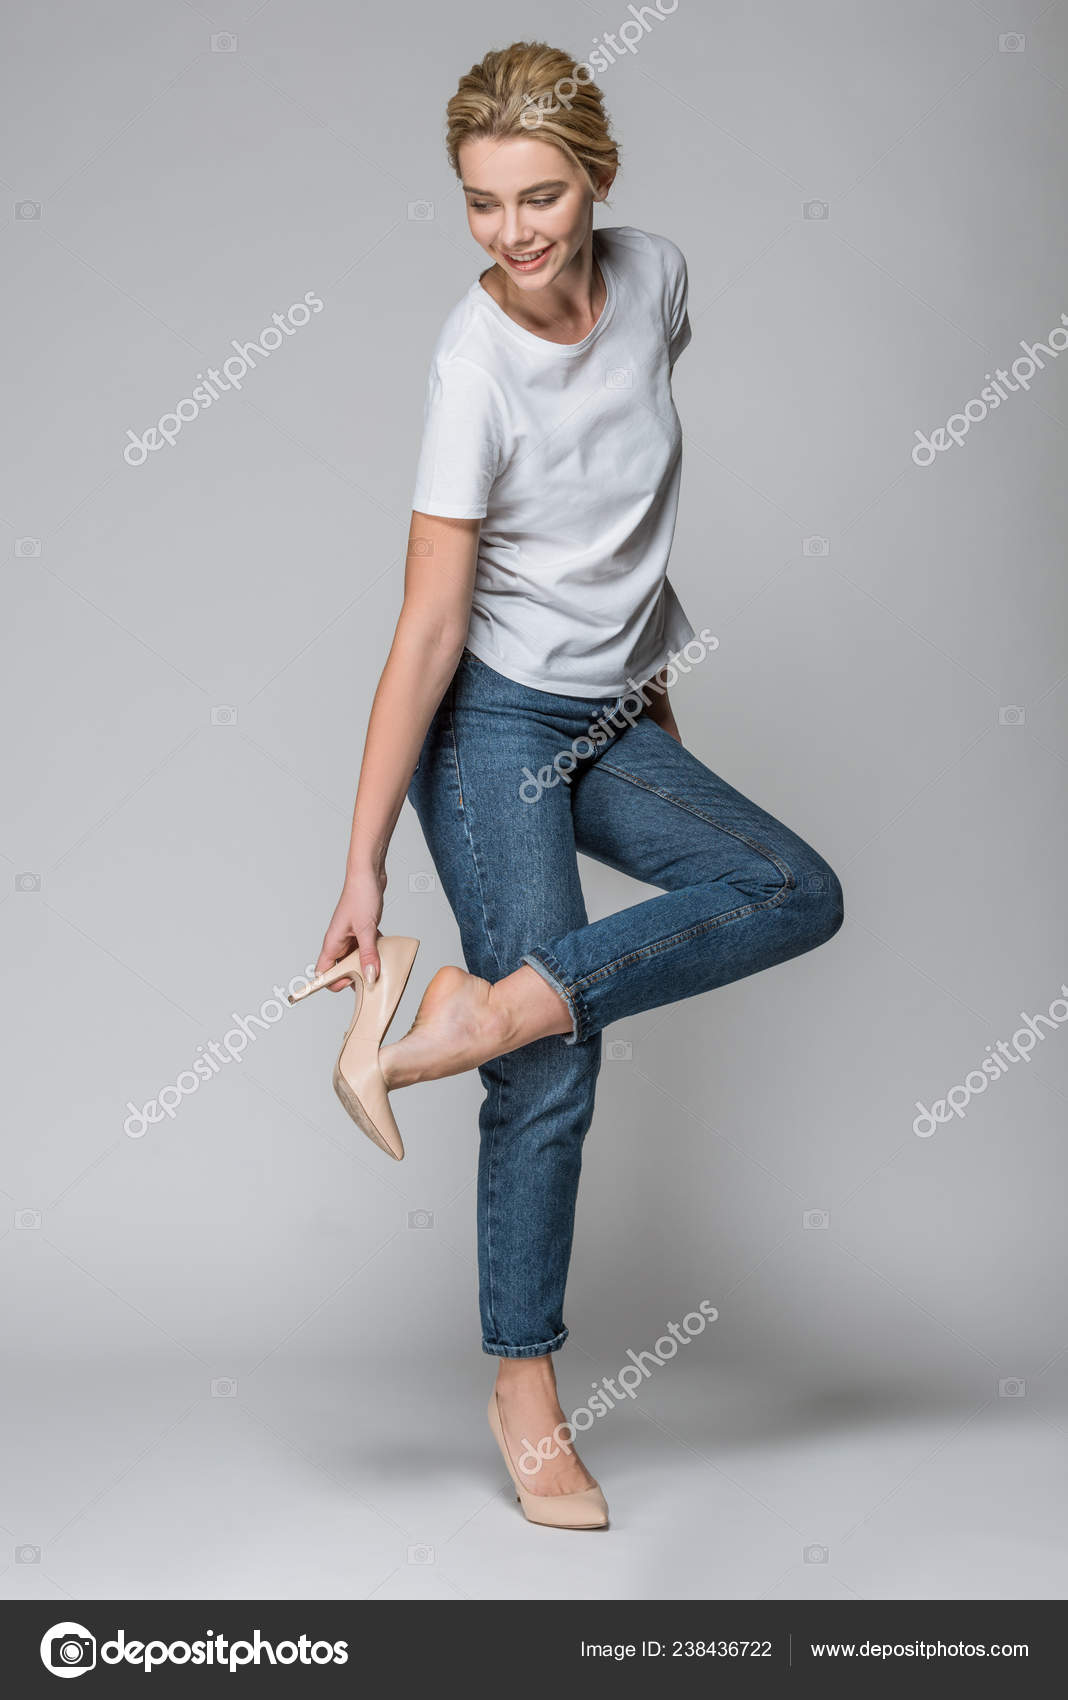 Jeans Heels